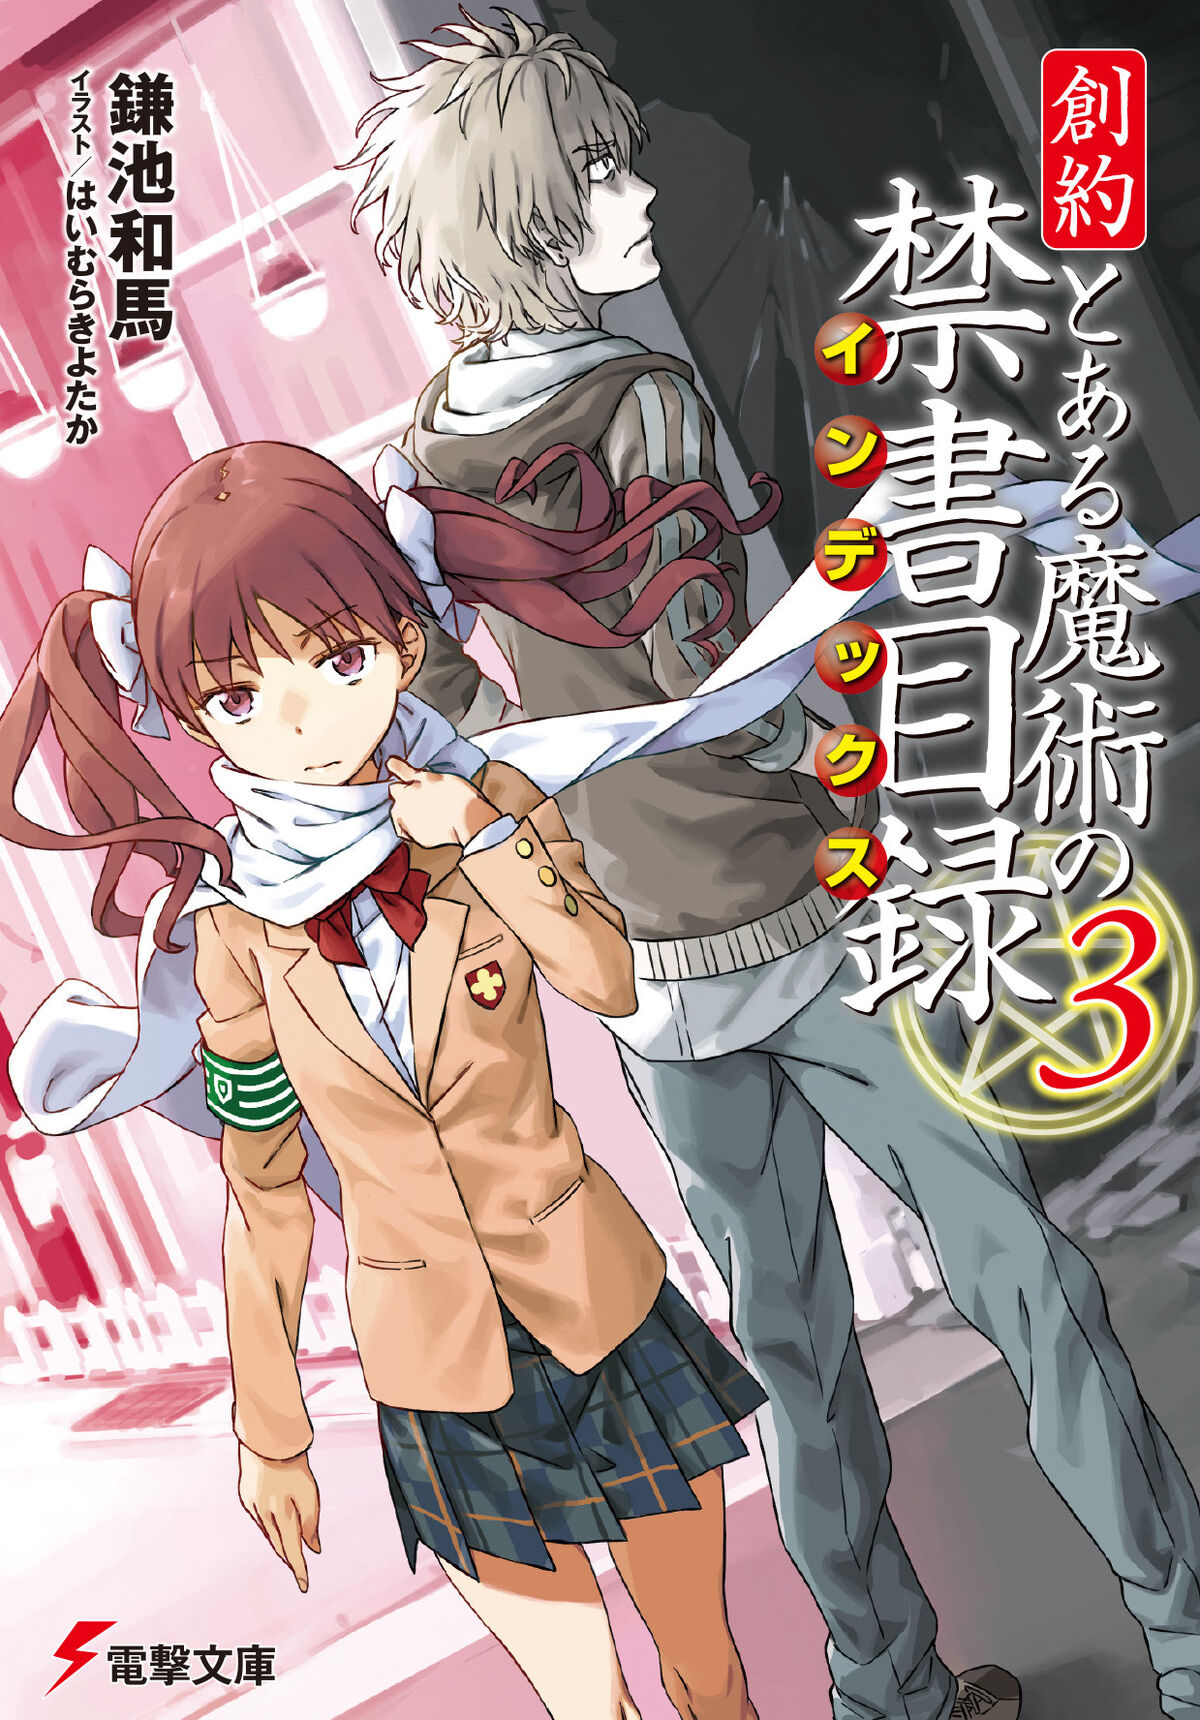 Souyaku Toaru Majutsu no Index Light Novel Volume 03 | Toaru 